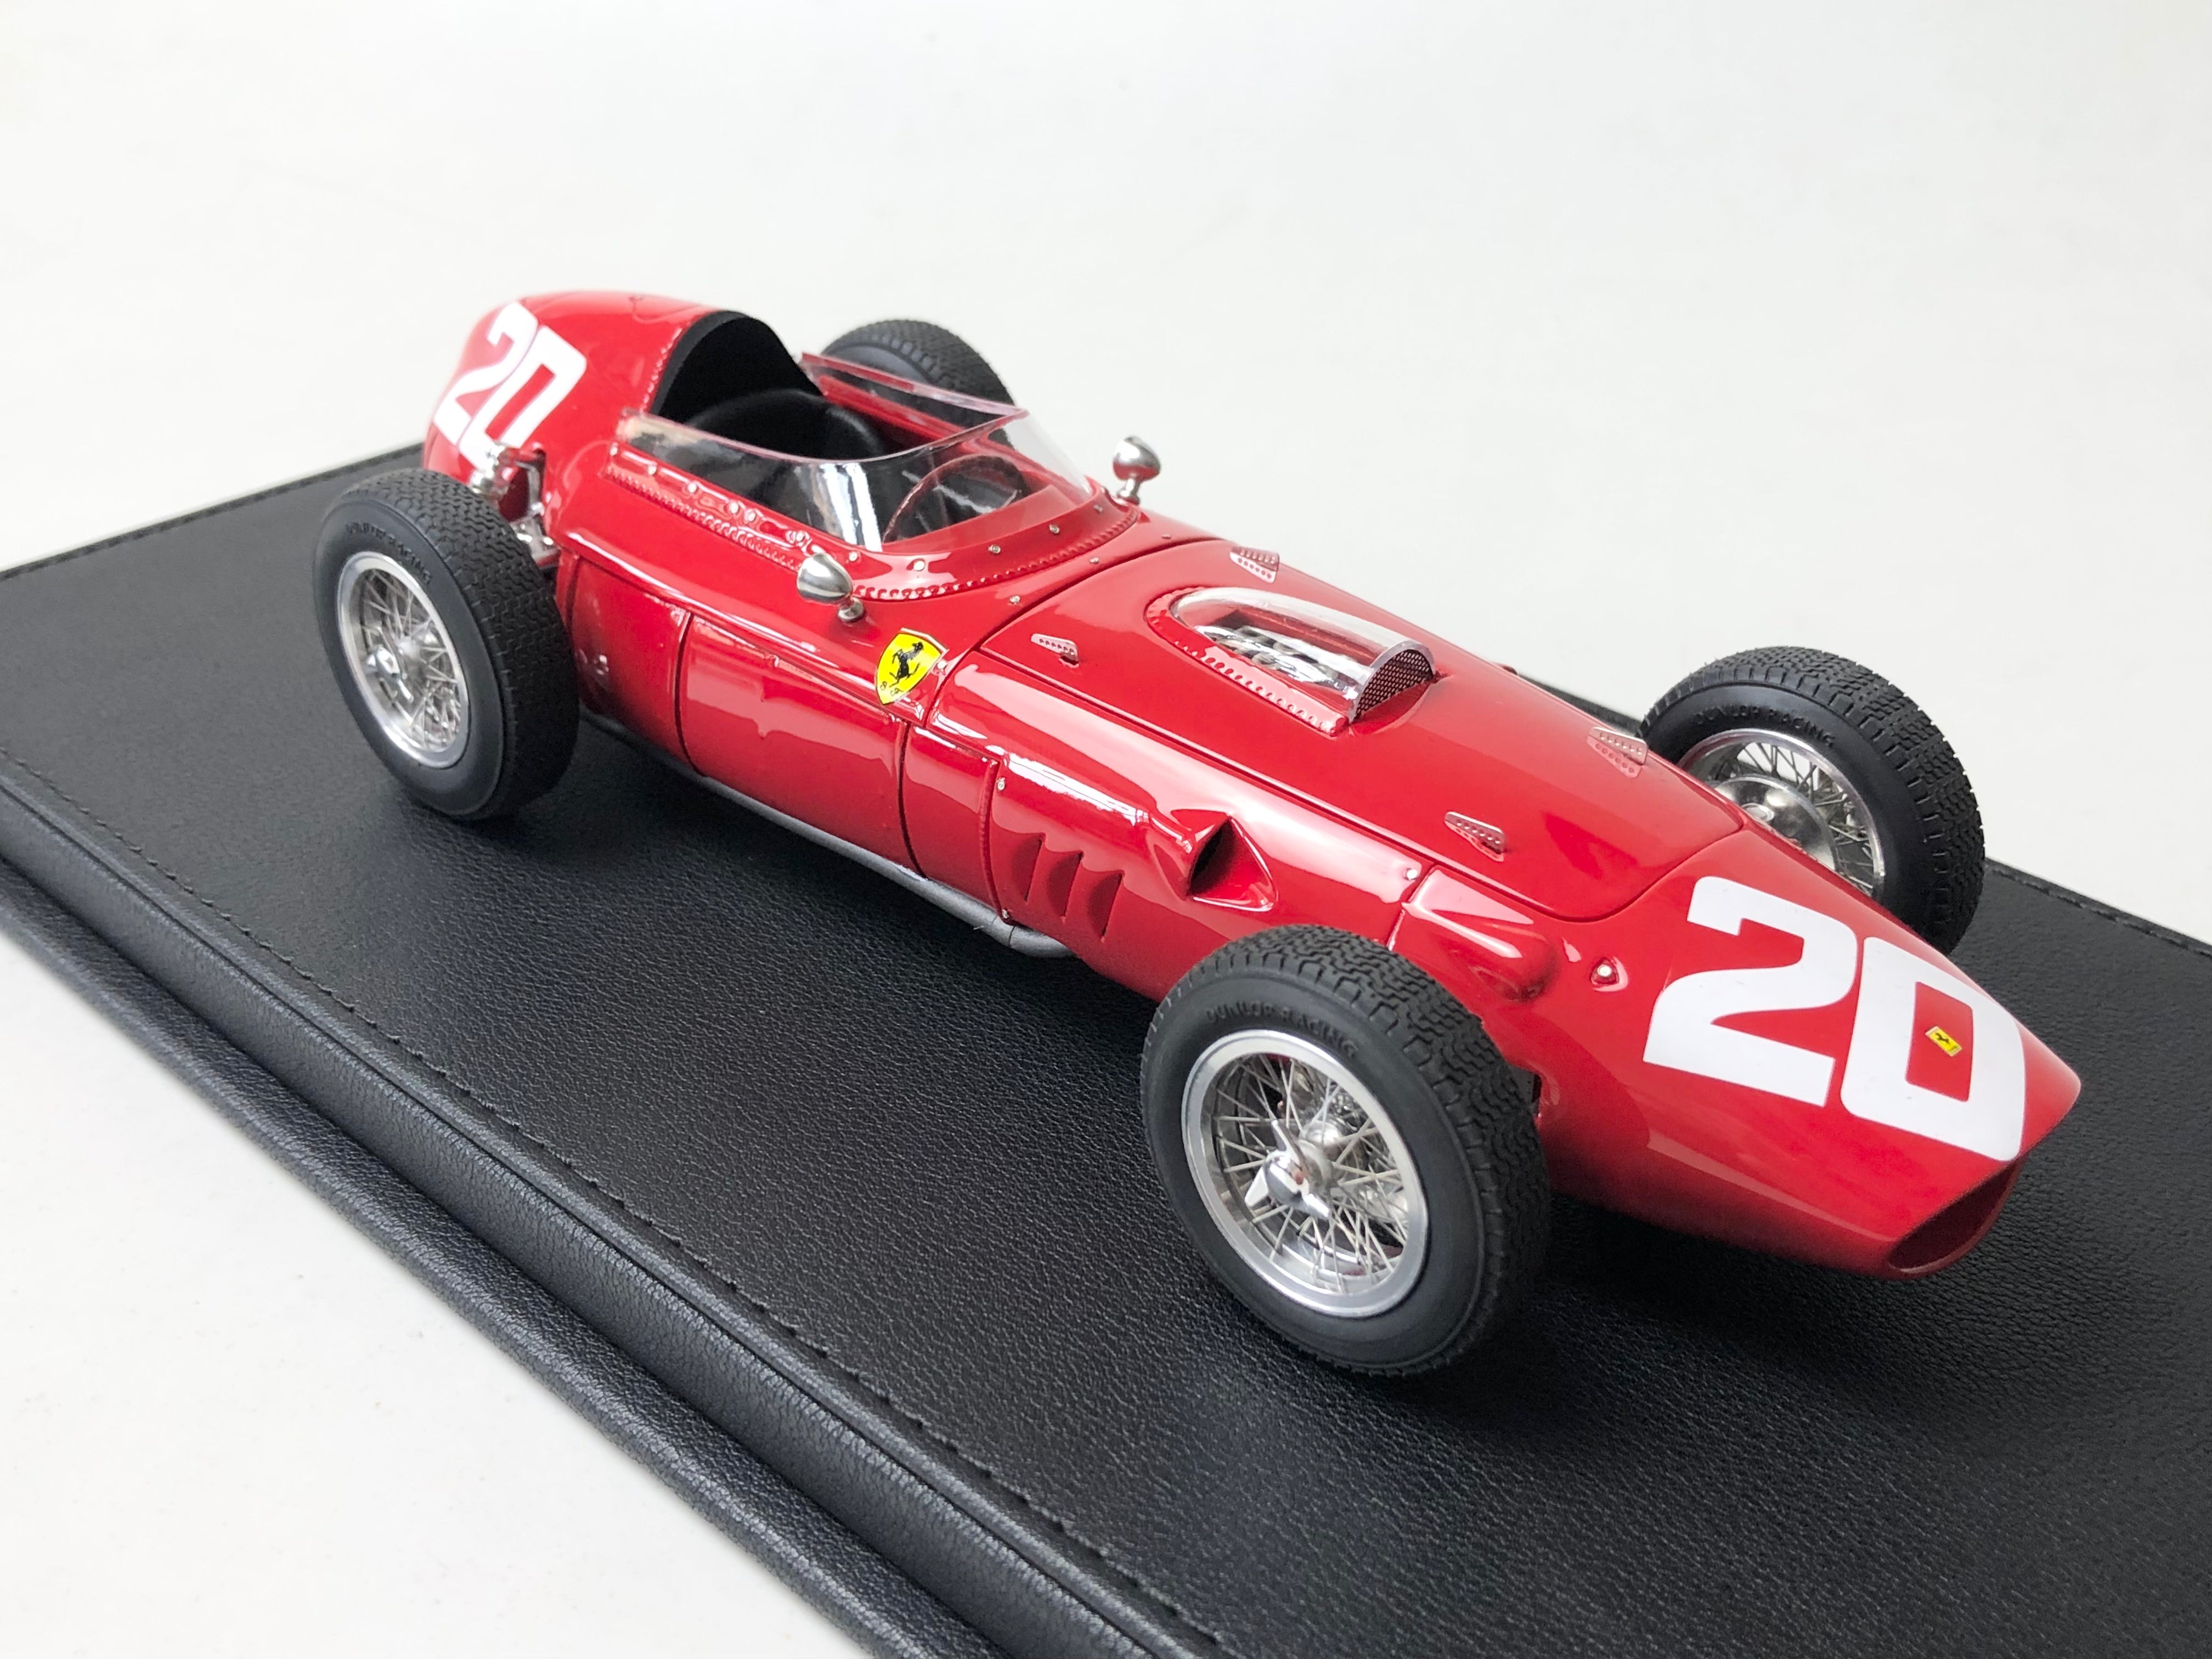 1960 Ferrari 246 Dino F1 #20 Phil Hill, 1:18 scale